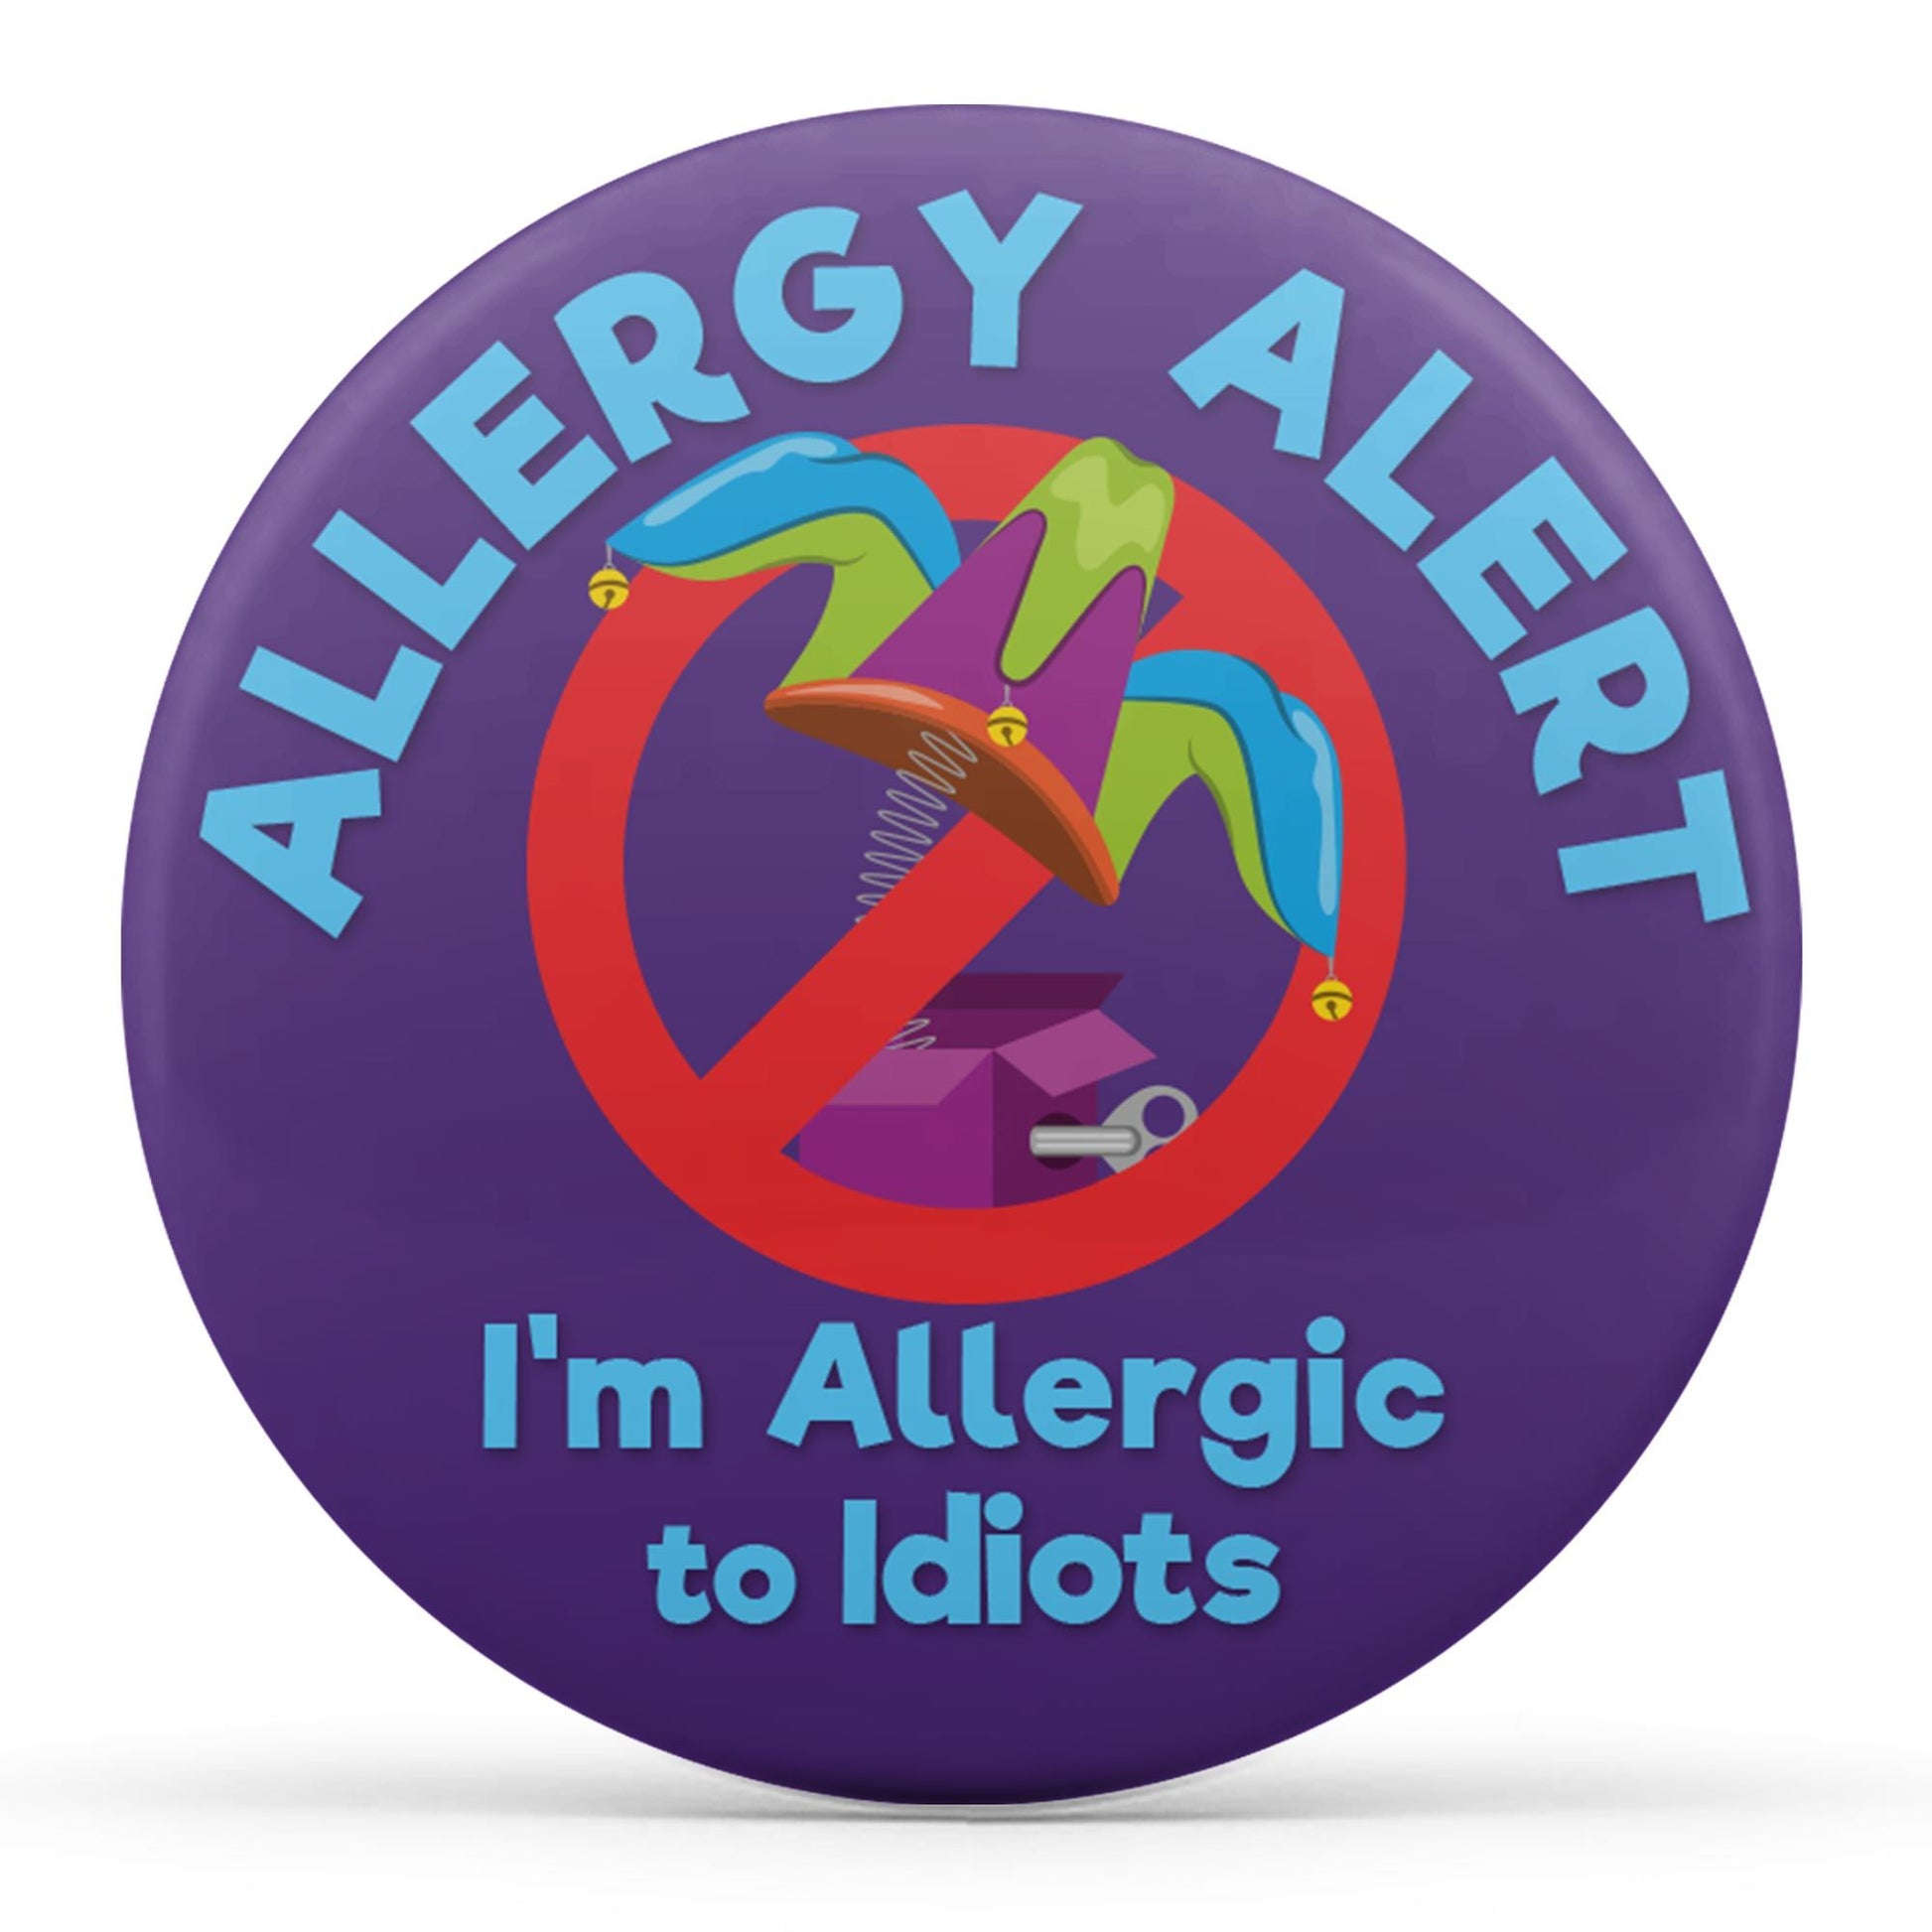 Allergy Alert - I'm Allergic to Idiots Image